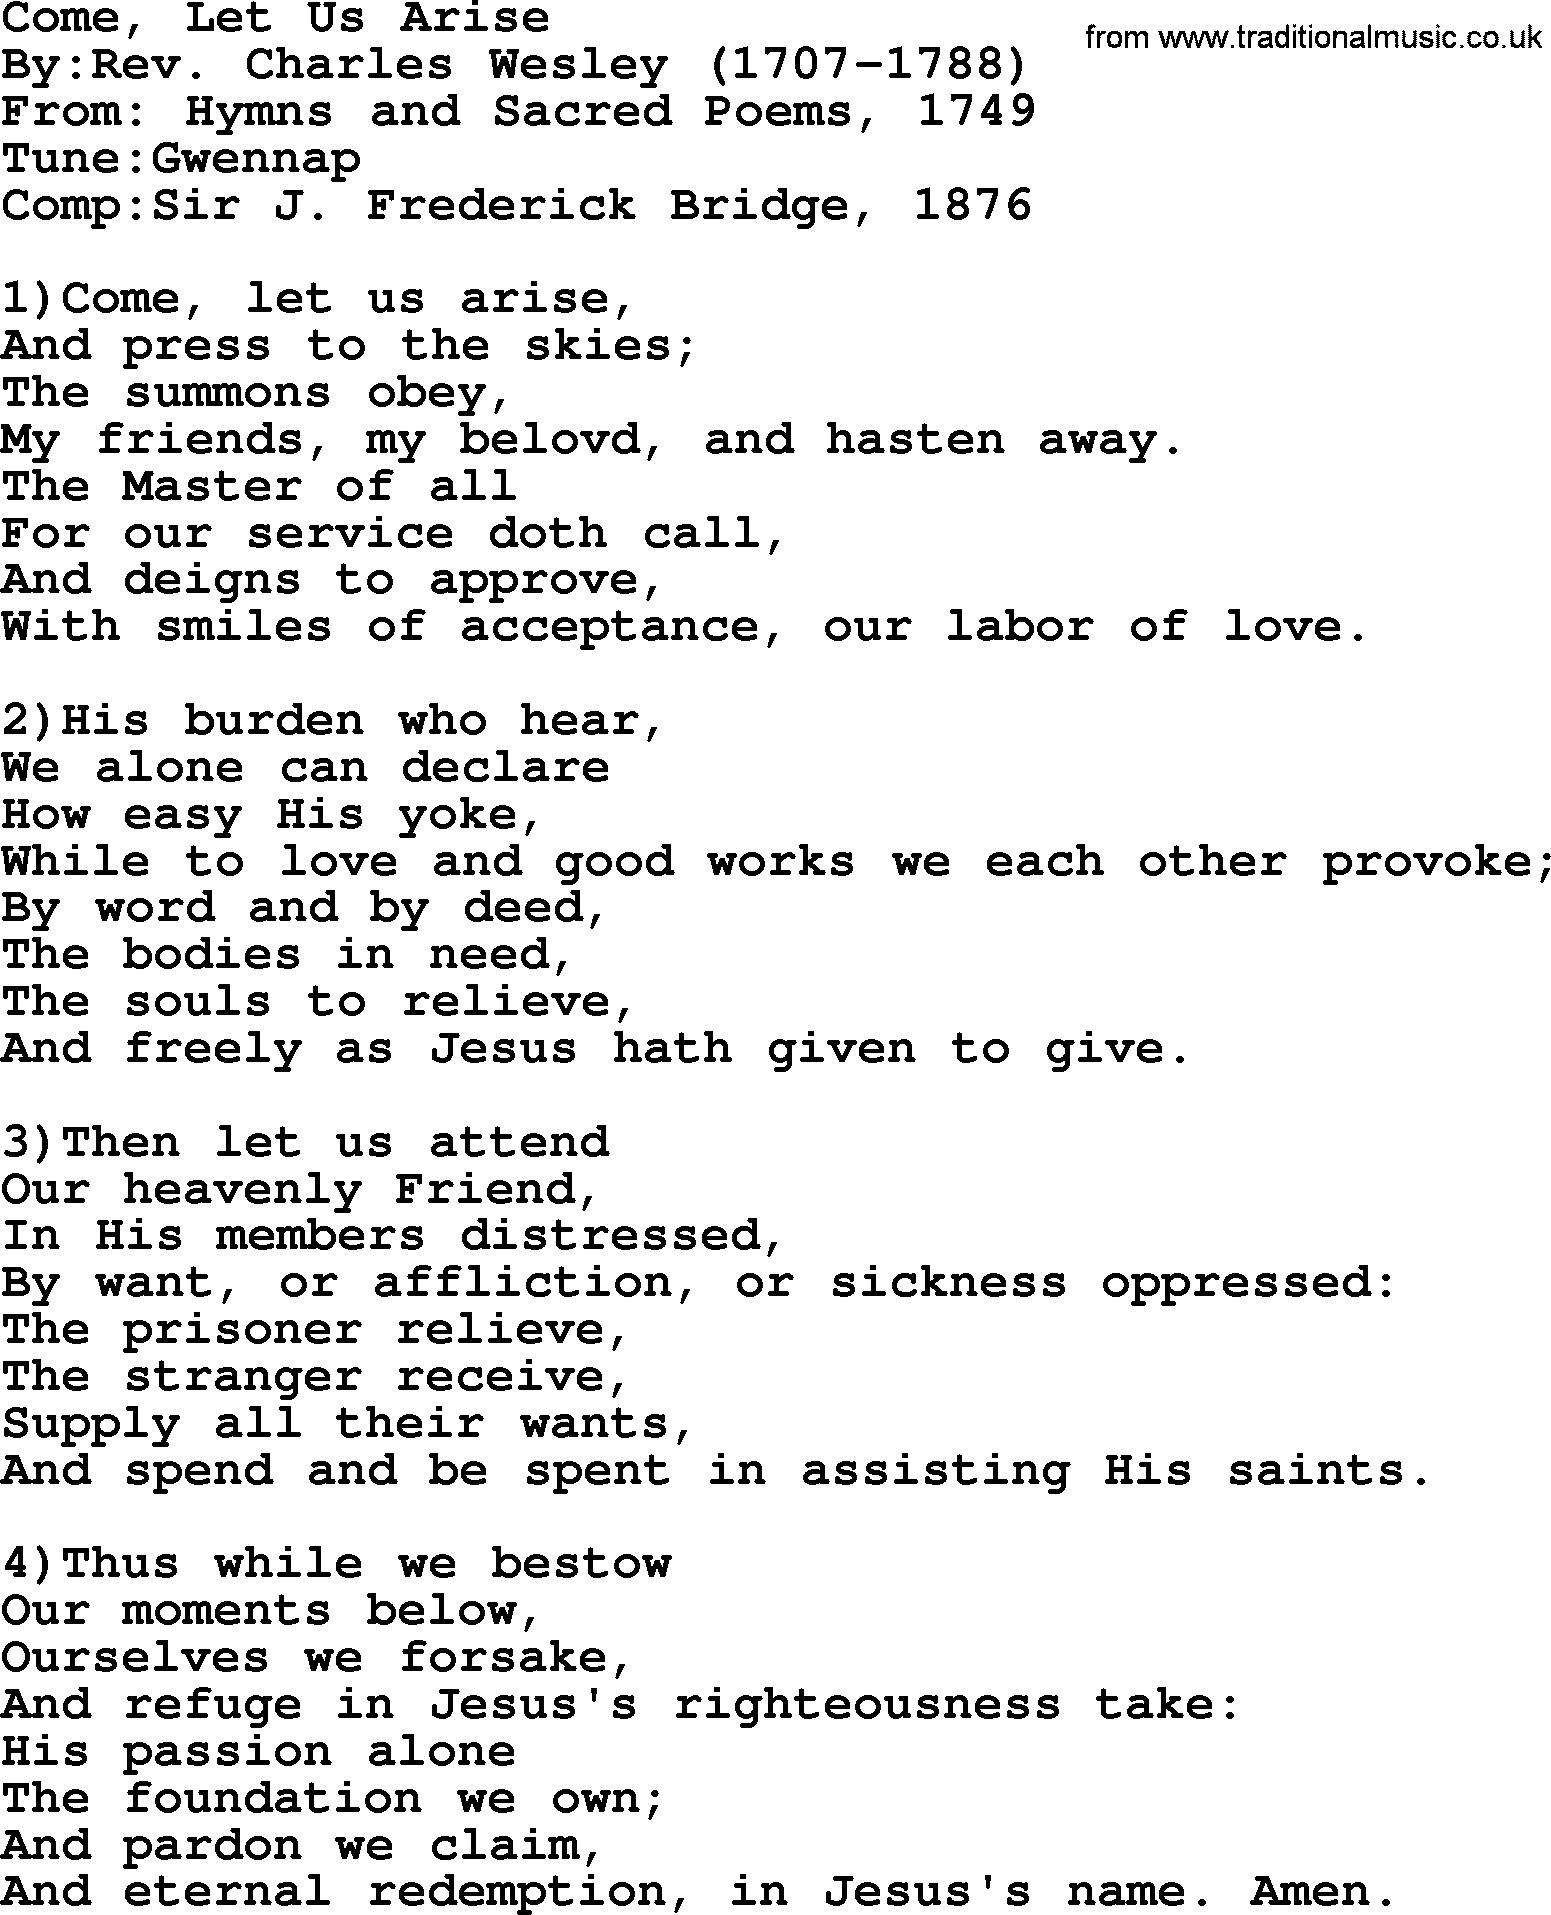 Methodist Hymn: Come, Let Us Arise, lyrics